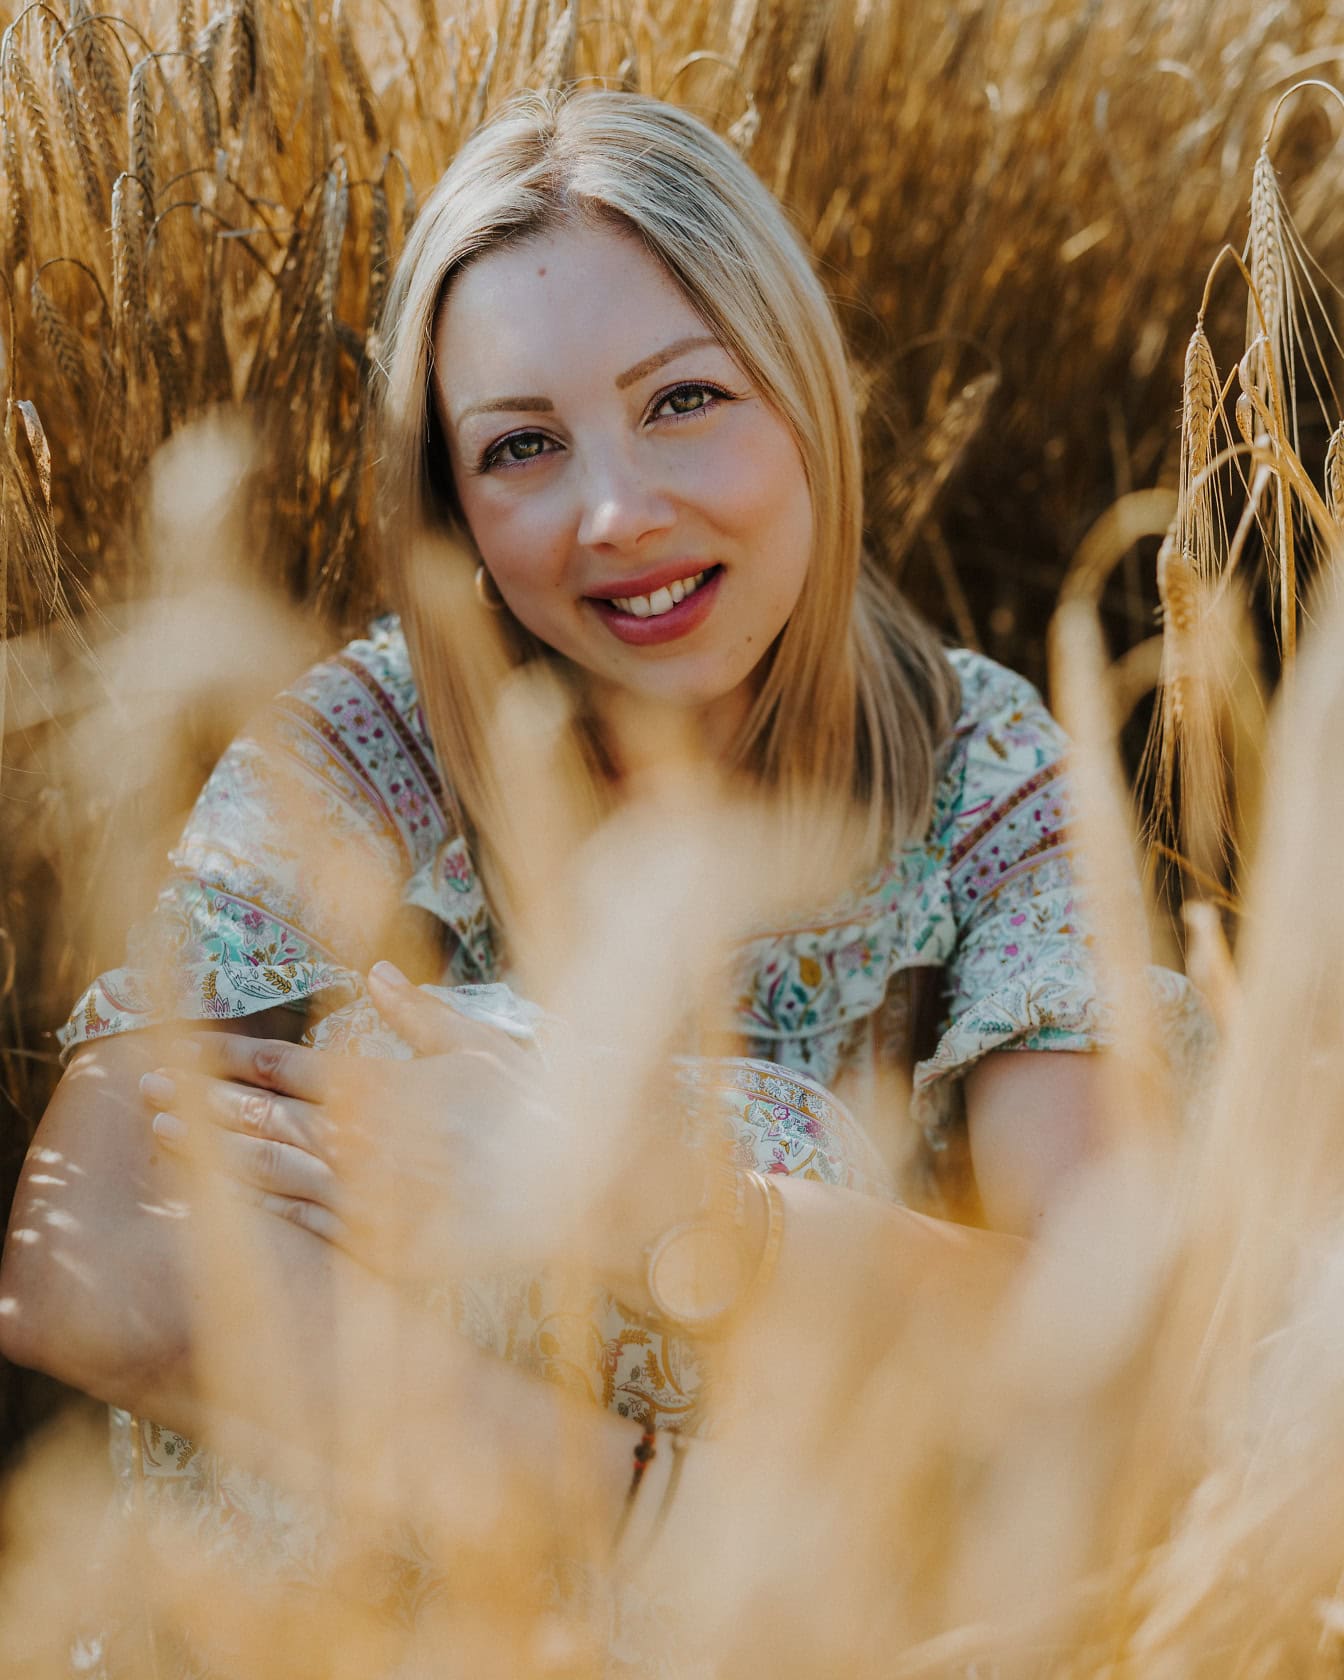 En betagende skønhedsblond kvinde sidder og smiler i en hvedemark